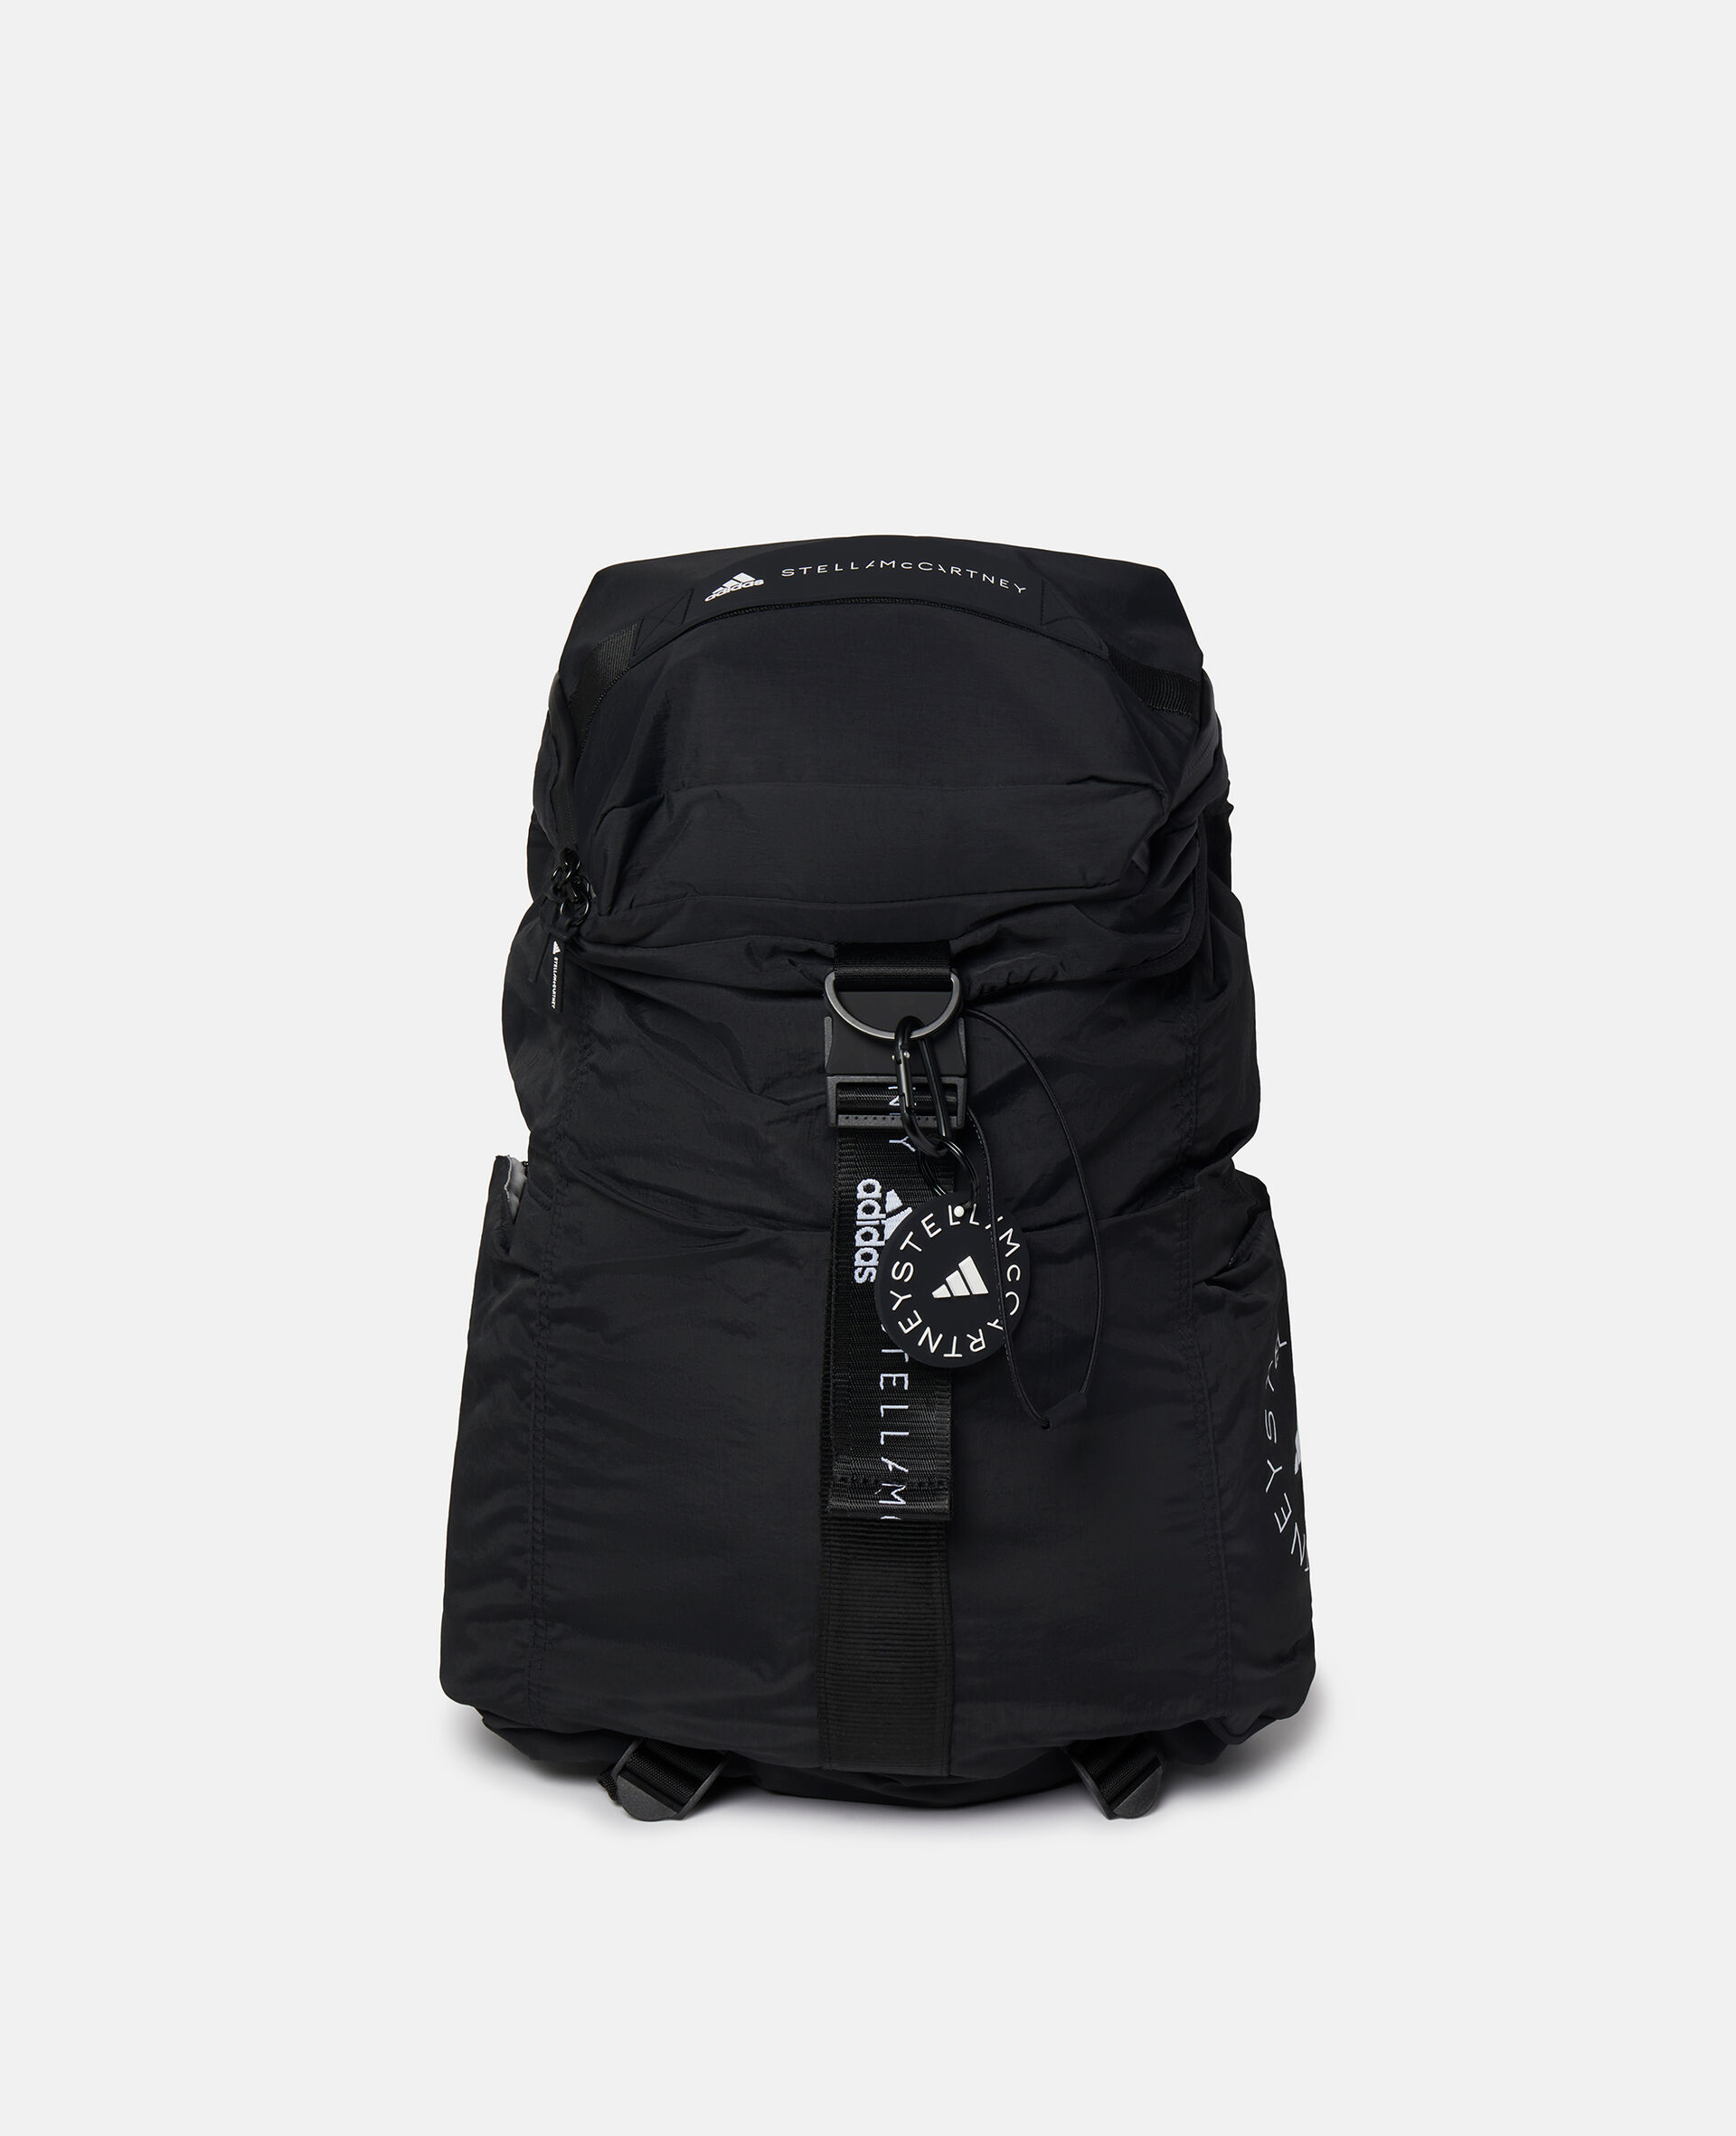 adidas Women's Yola Backpack Black Emboss/black/white Yoga Bag